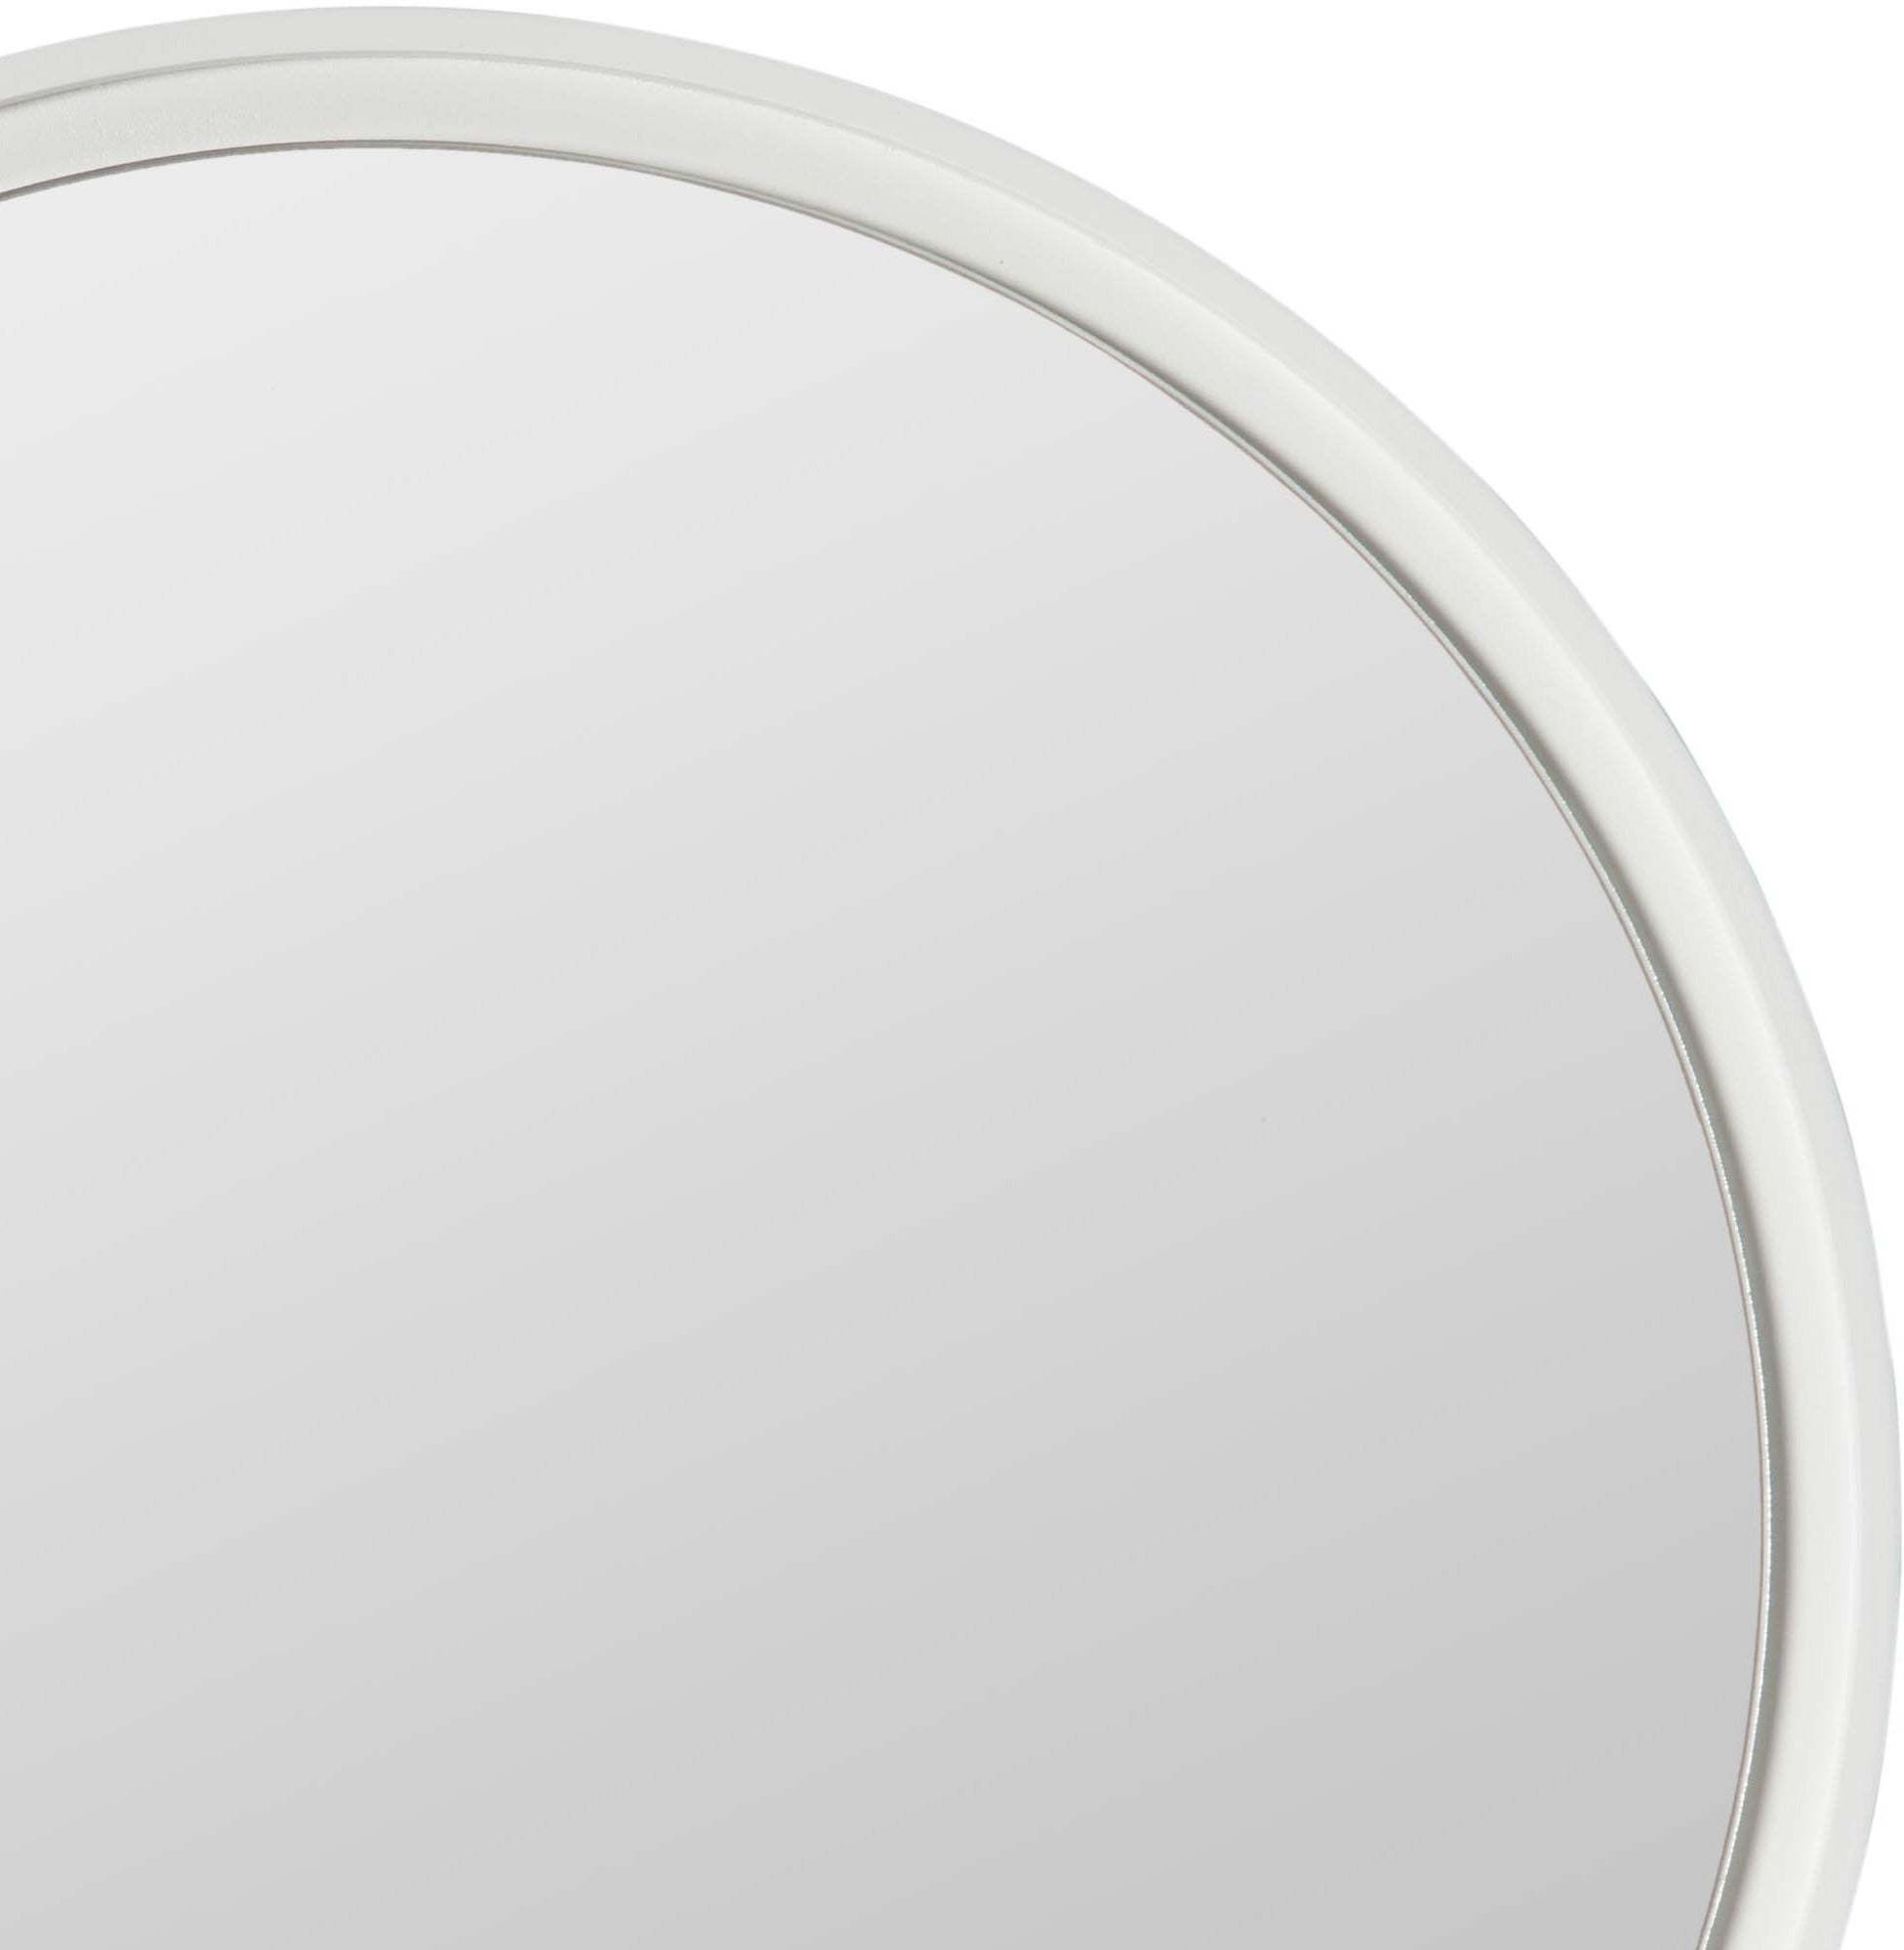 Round mirror with white frame